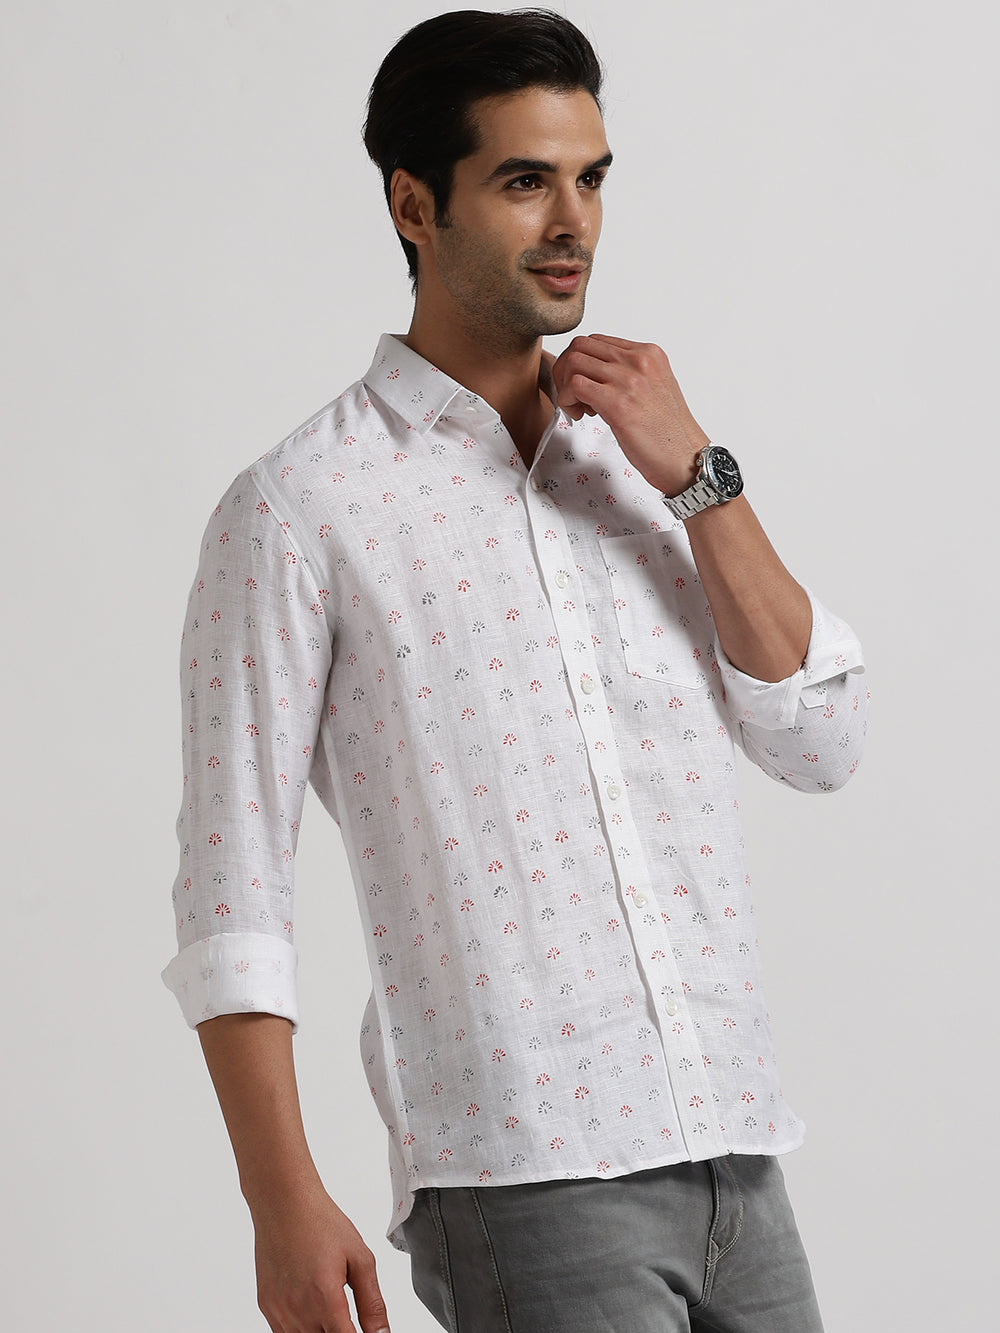 Adam - Pure Linen Block Printed Full Sleeve Shirt - Red, Grey & White